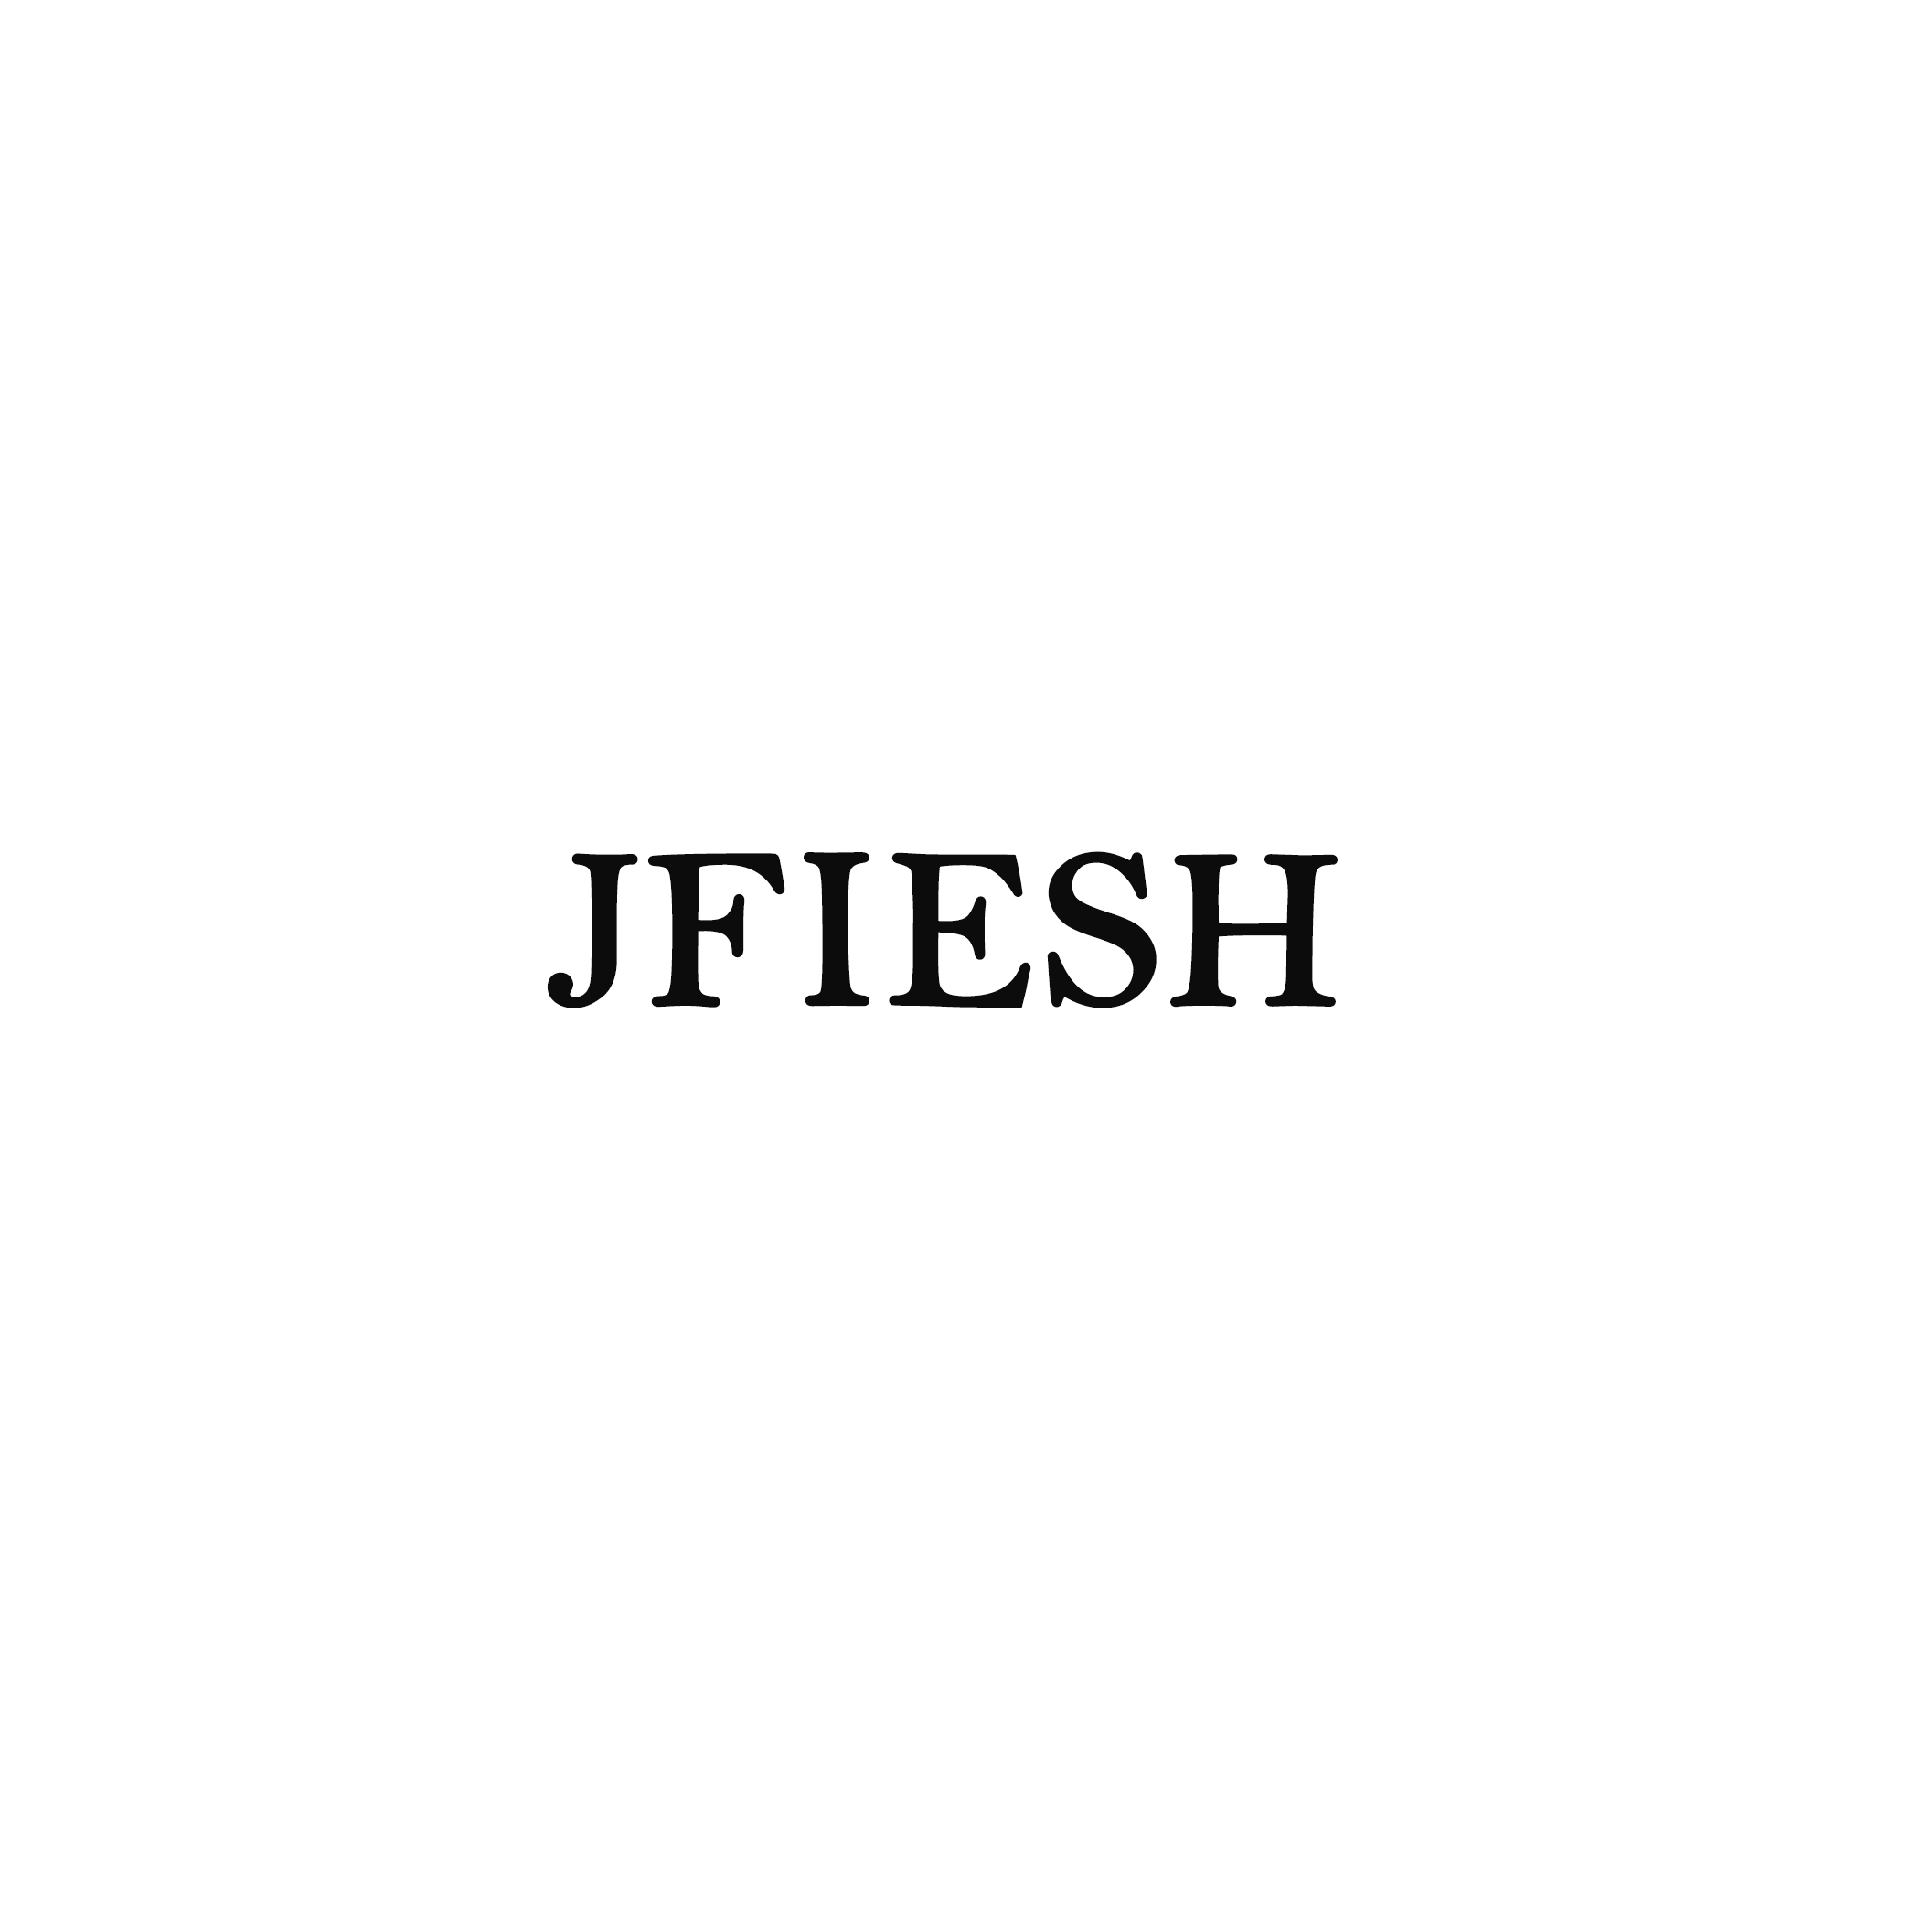 Product Brand: JFIESH